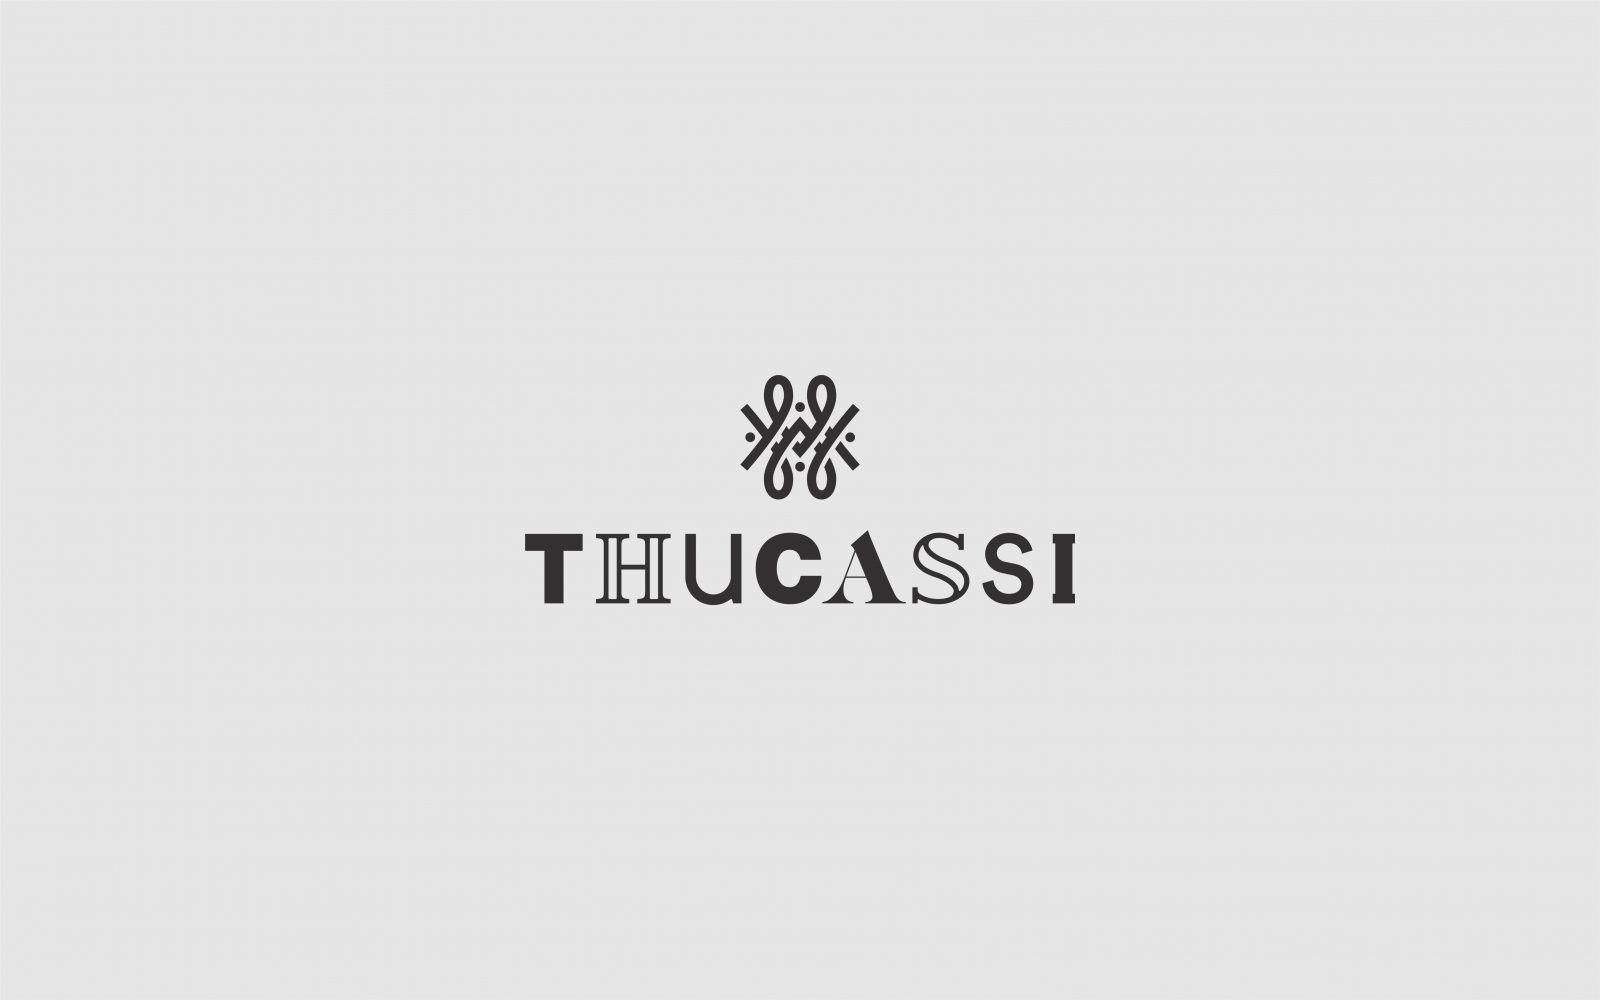 Thu Logo - Various Logos & Brand Marks